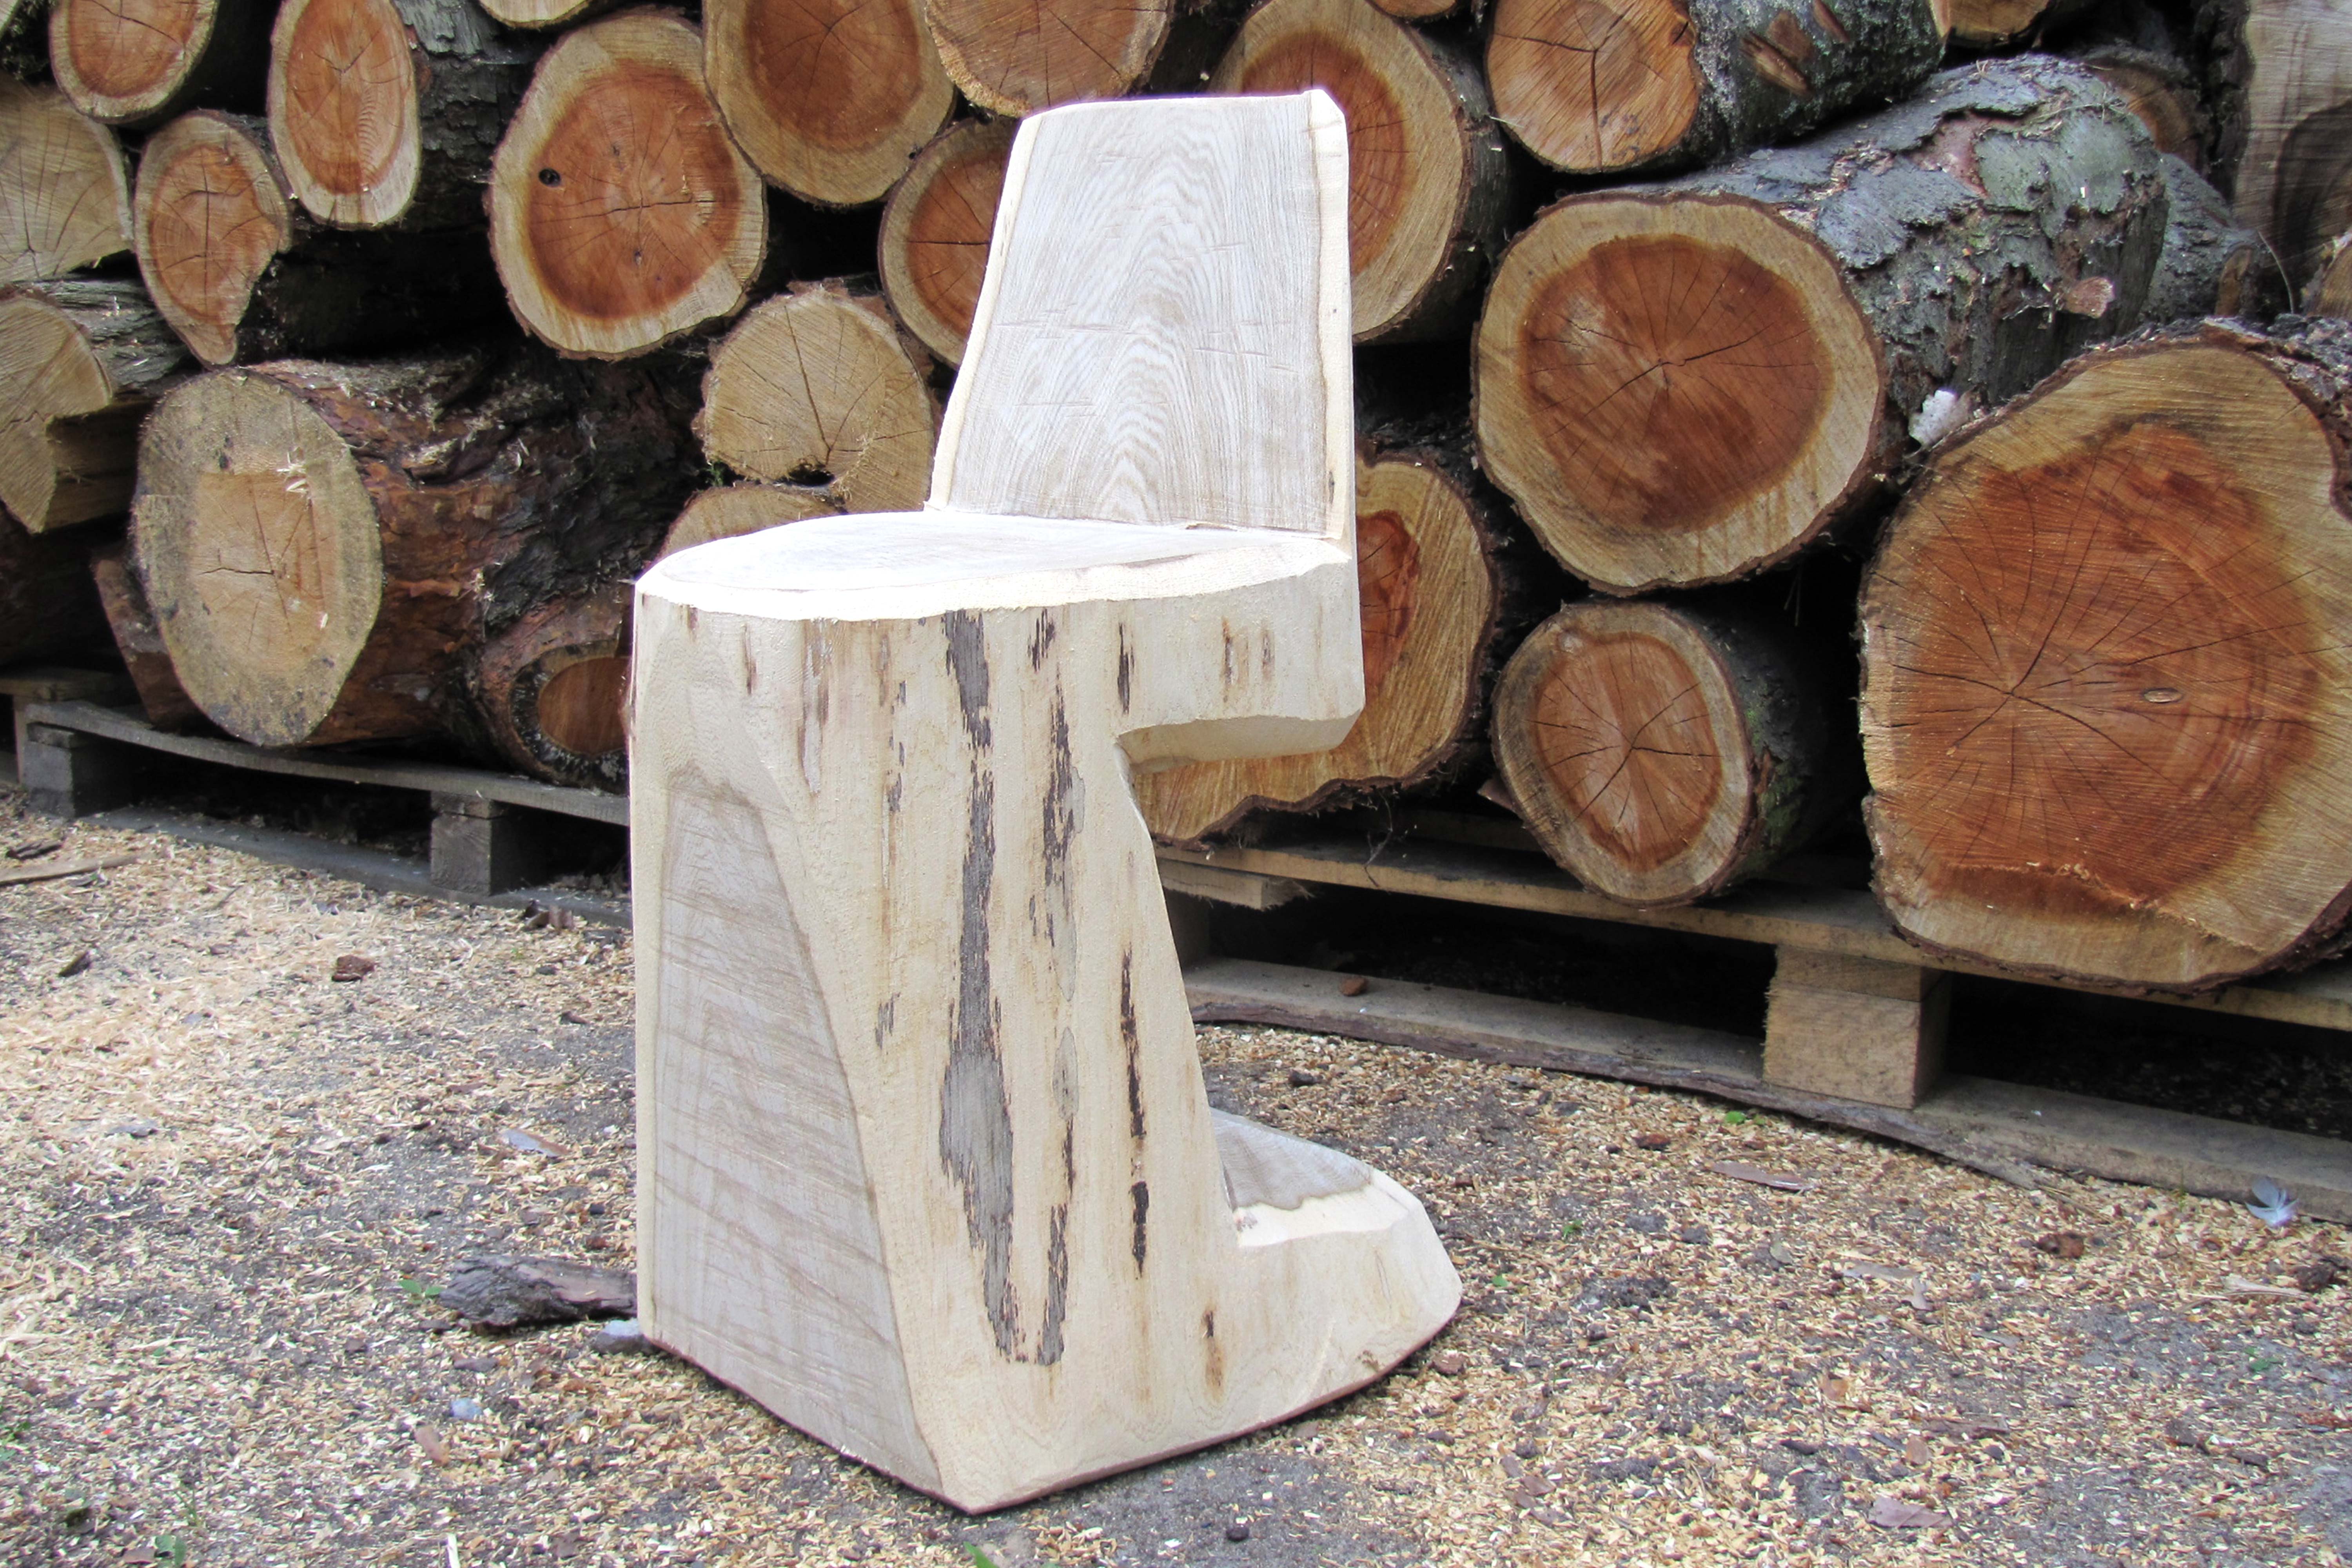 Une chaise en rondin de bois terminée devant un tas de troncs d’arbres